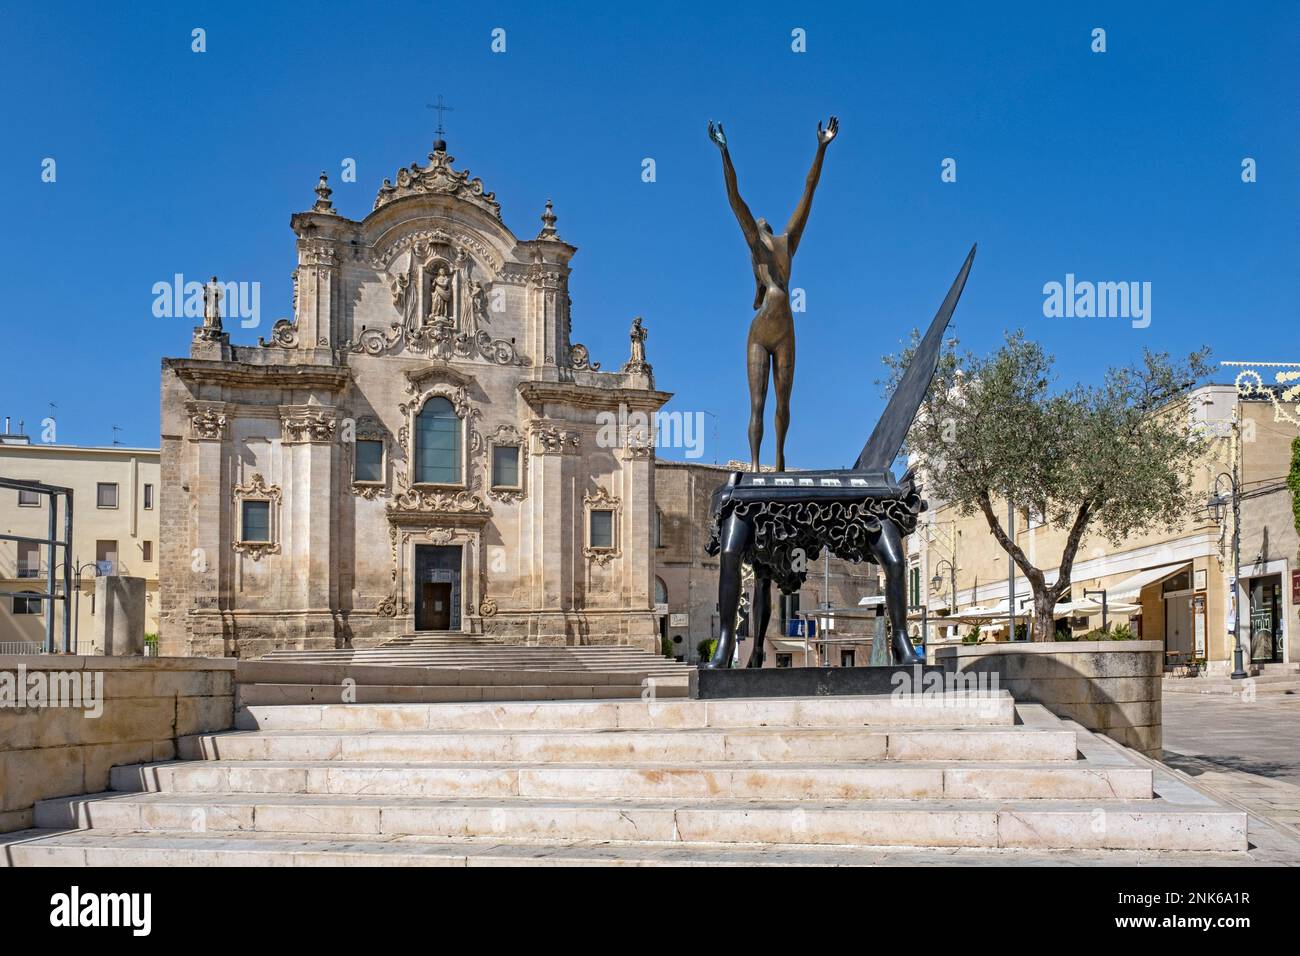 Salvador Dalì scultura di fronte alla Chiesa di San Francesco d’Assisi nel centro storico di Matera, capitale della Basilicata, Italia meridionale Foto Stock